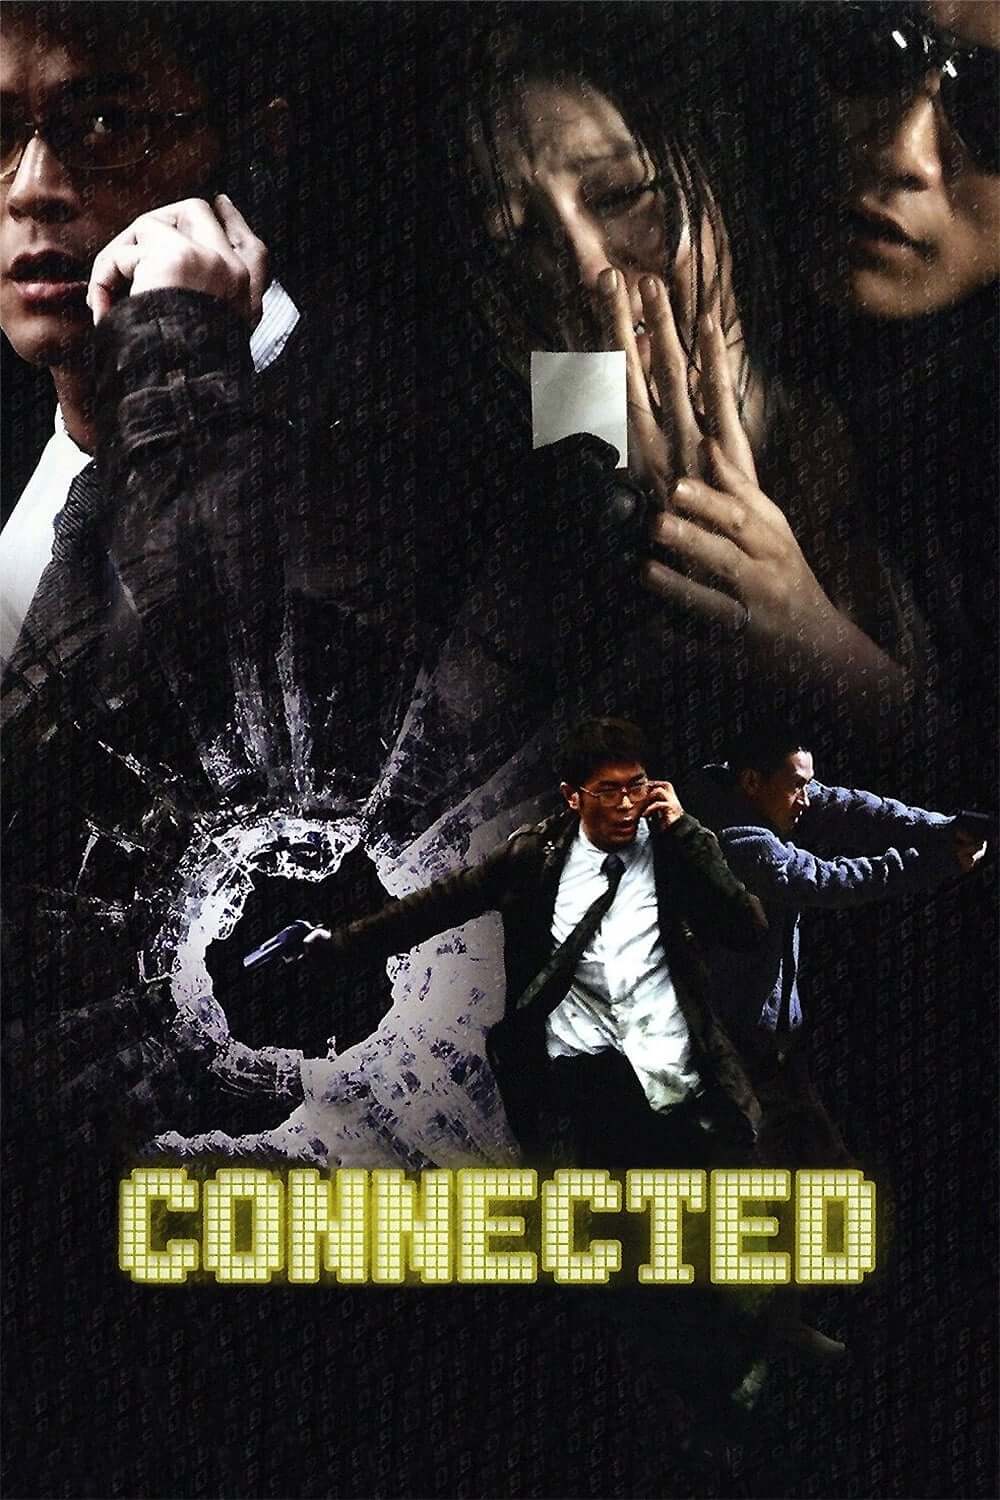 متصل (Connected)